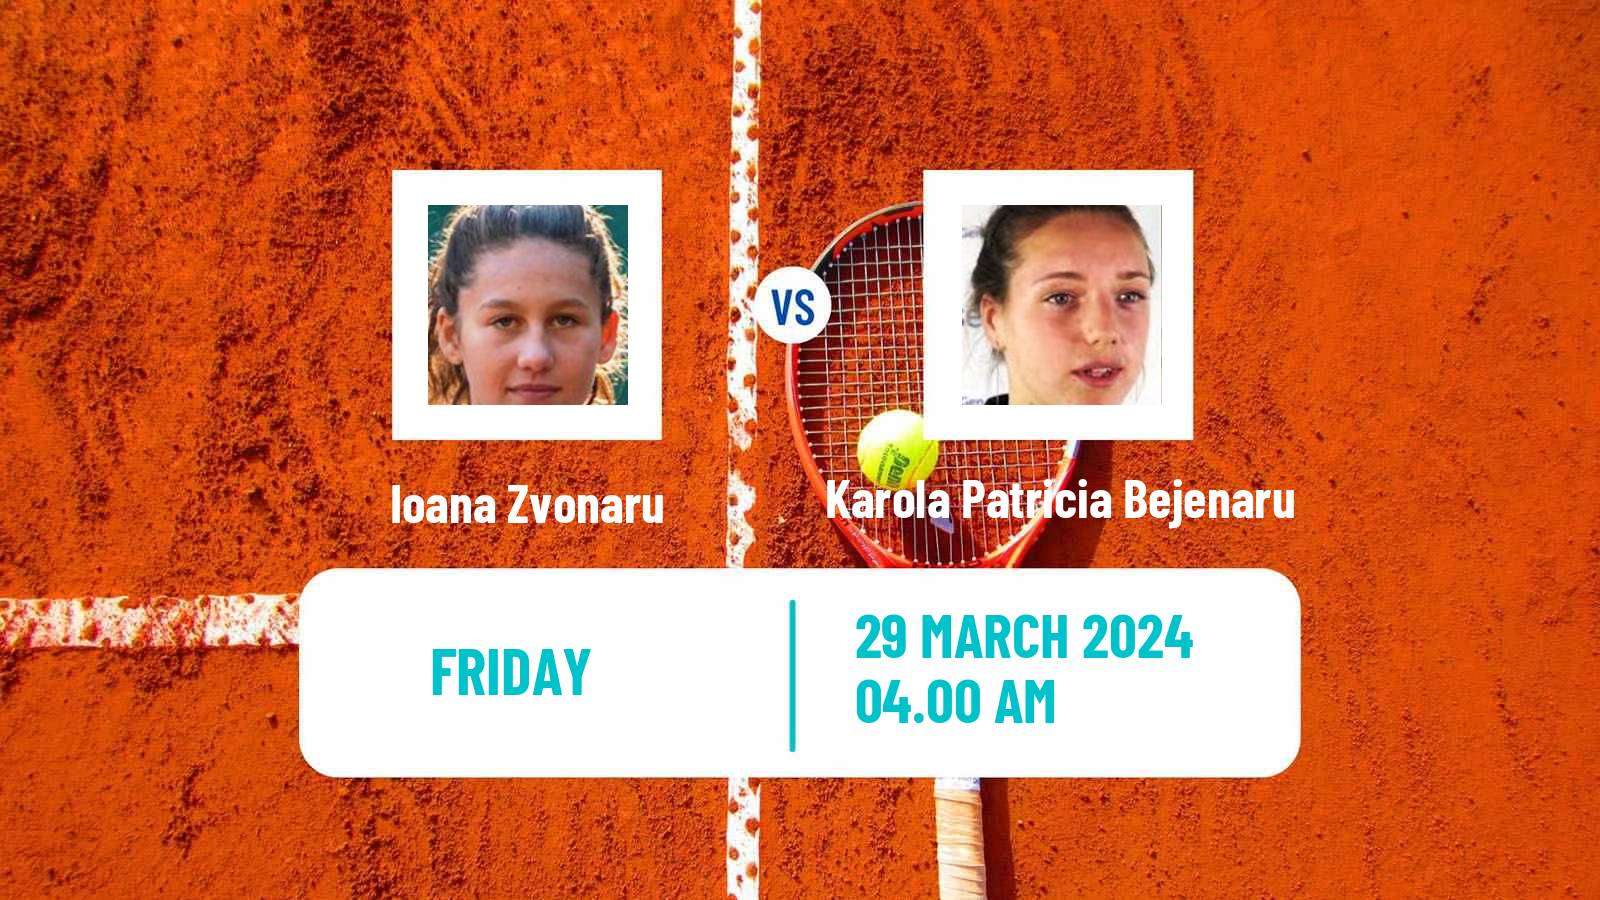 Tennis ITF W15 Sharm Elsheikh 8 Women Ioana Zvonaru - Karola Patricia Bejenaru